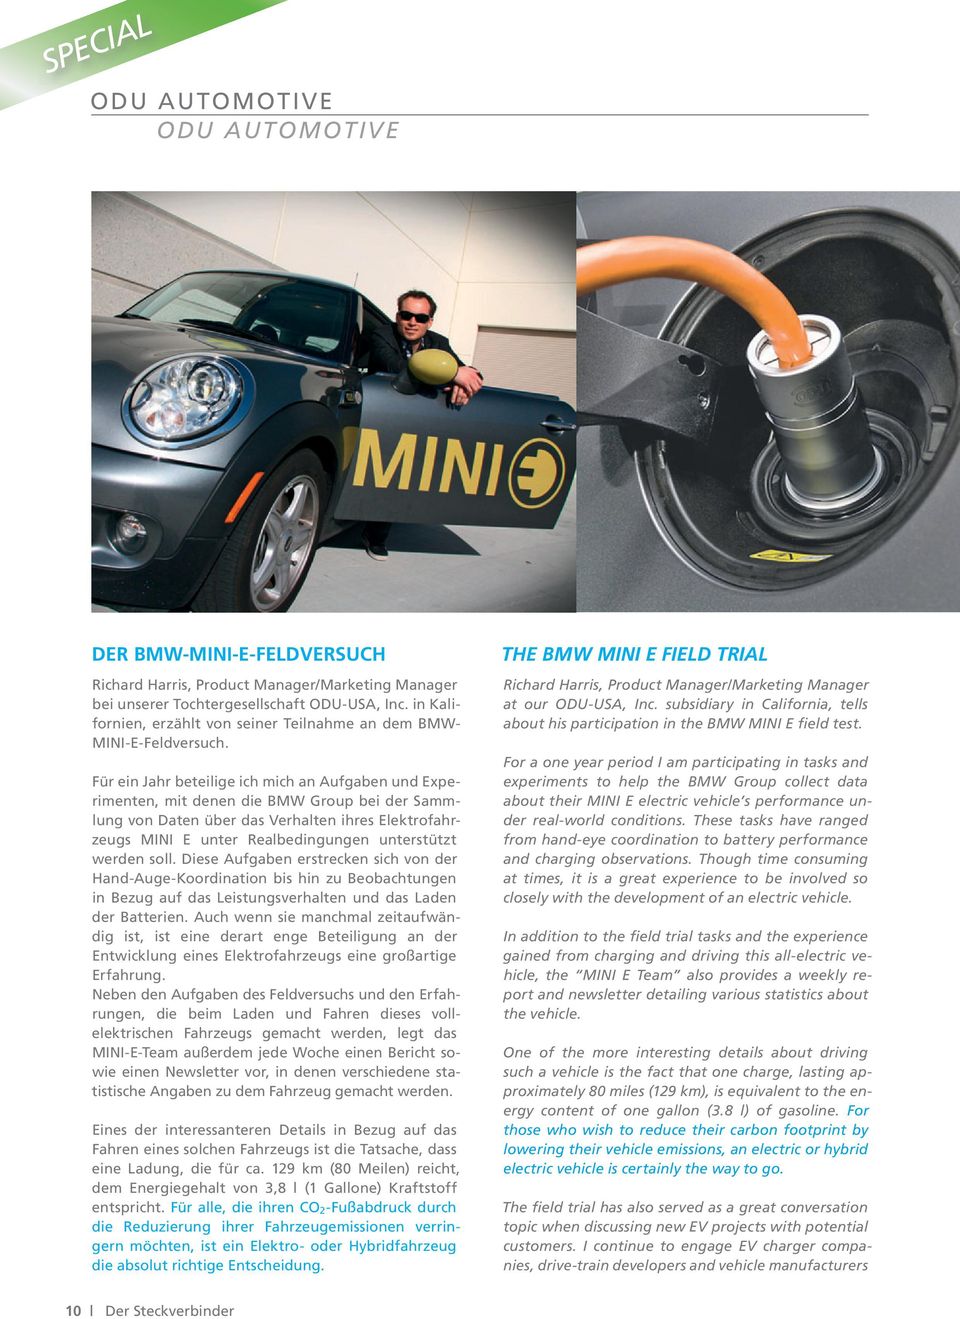 Für ein Jahr beteilige ich mich an Aufgaben und Experimenten, mit denen die BMW Group bei der Sammlung von Daten über das Verhalten ihres Elektrofahrzeugs MINI E unter Realbedingungen unterstützt